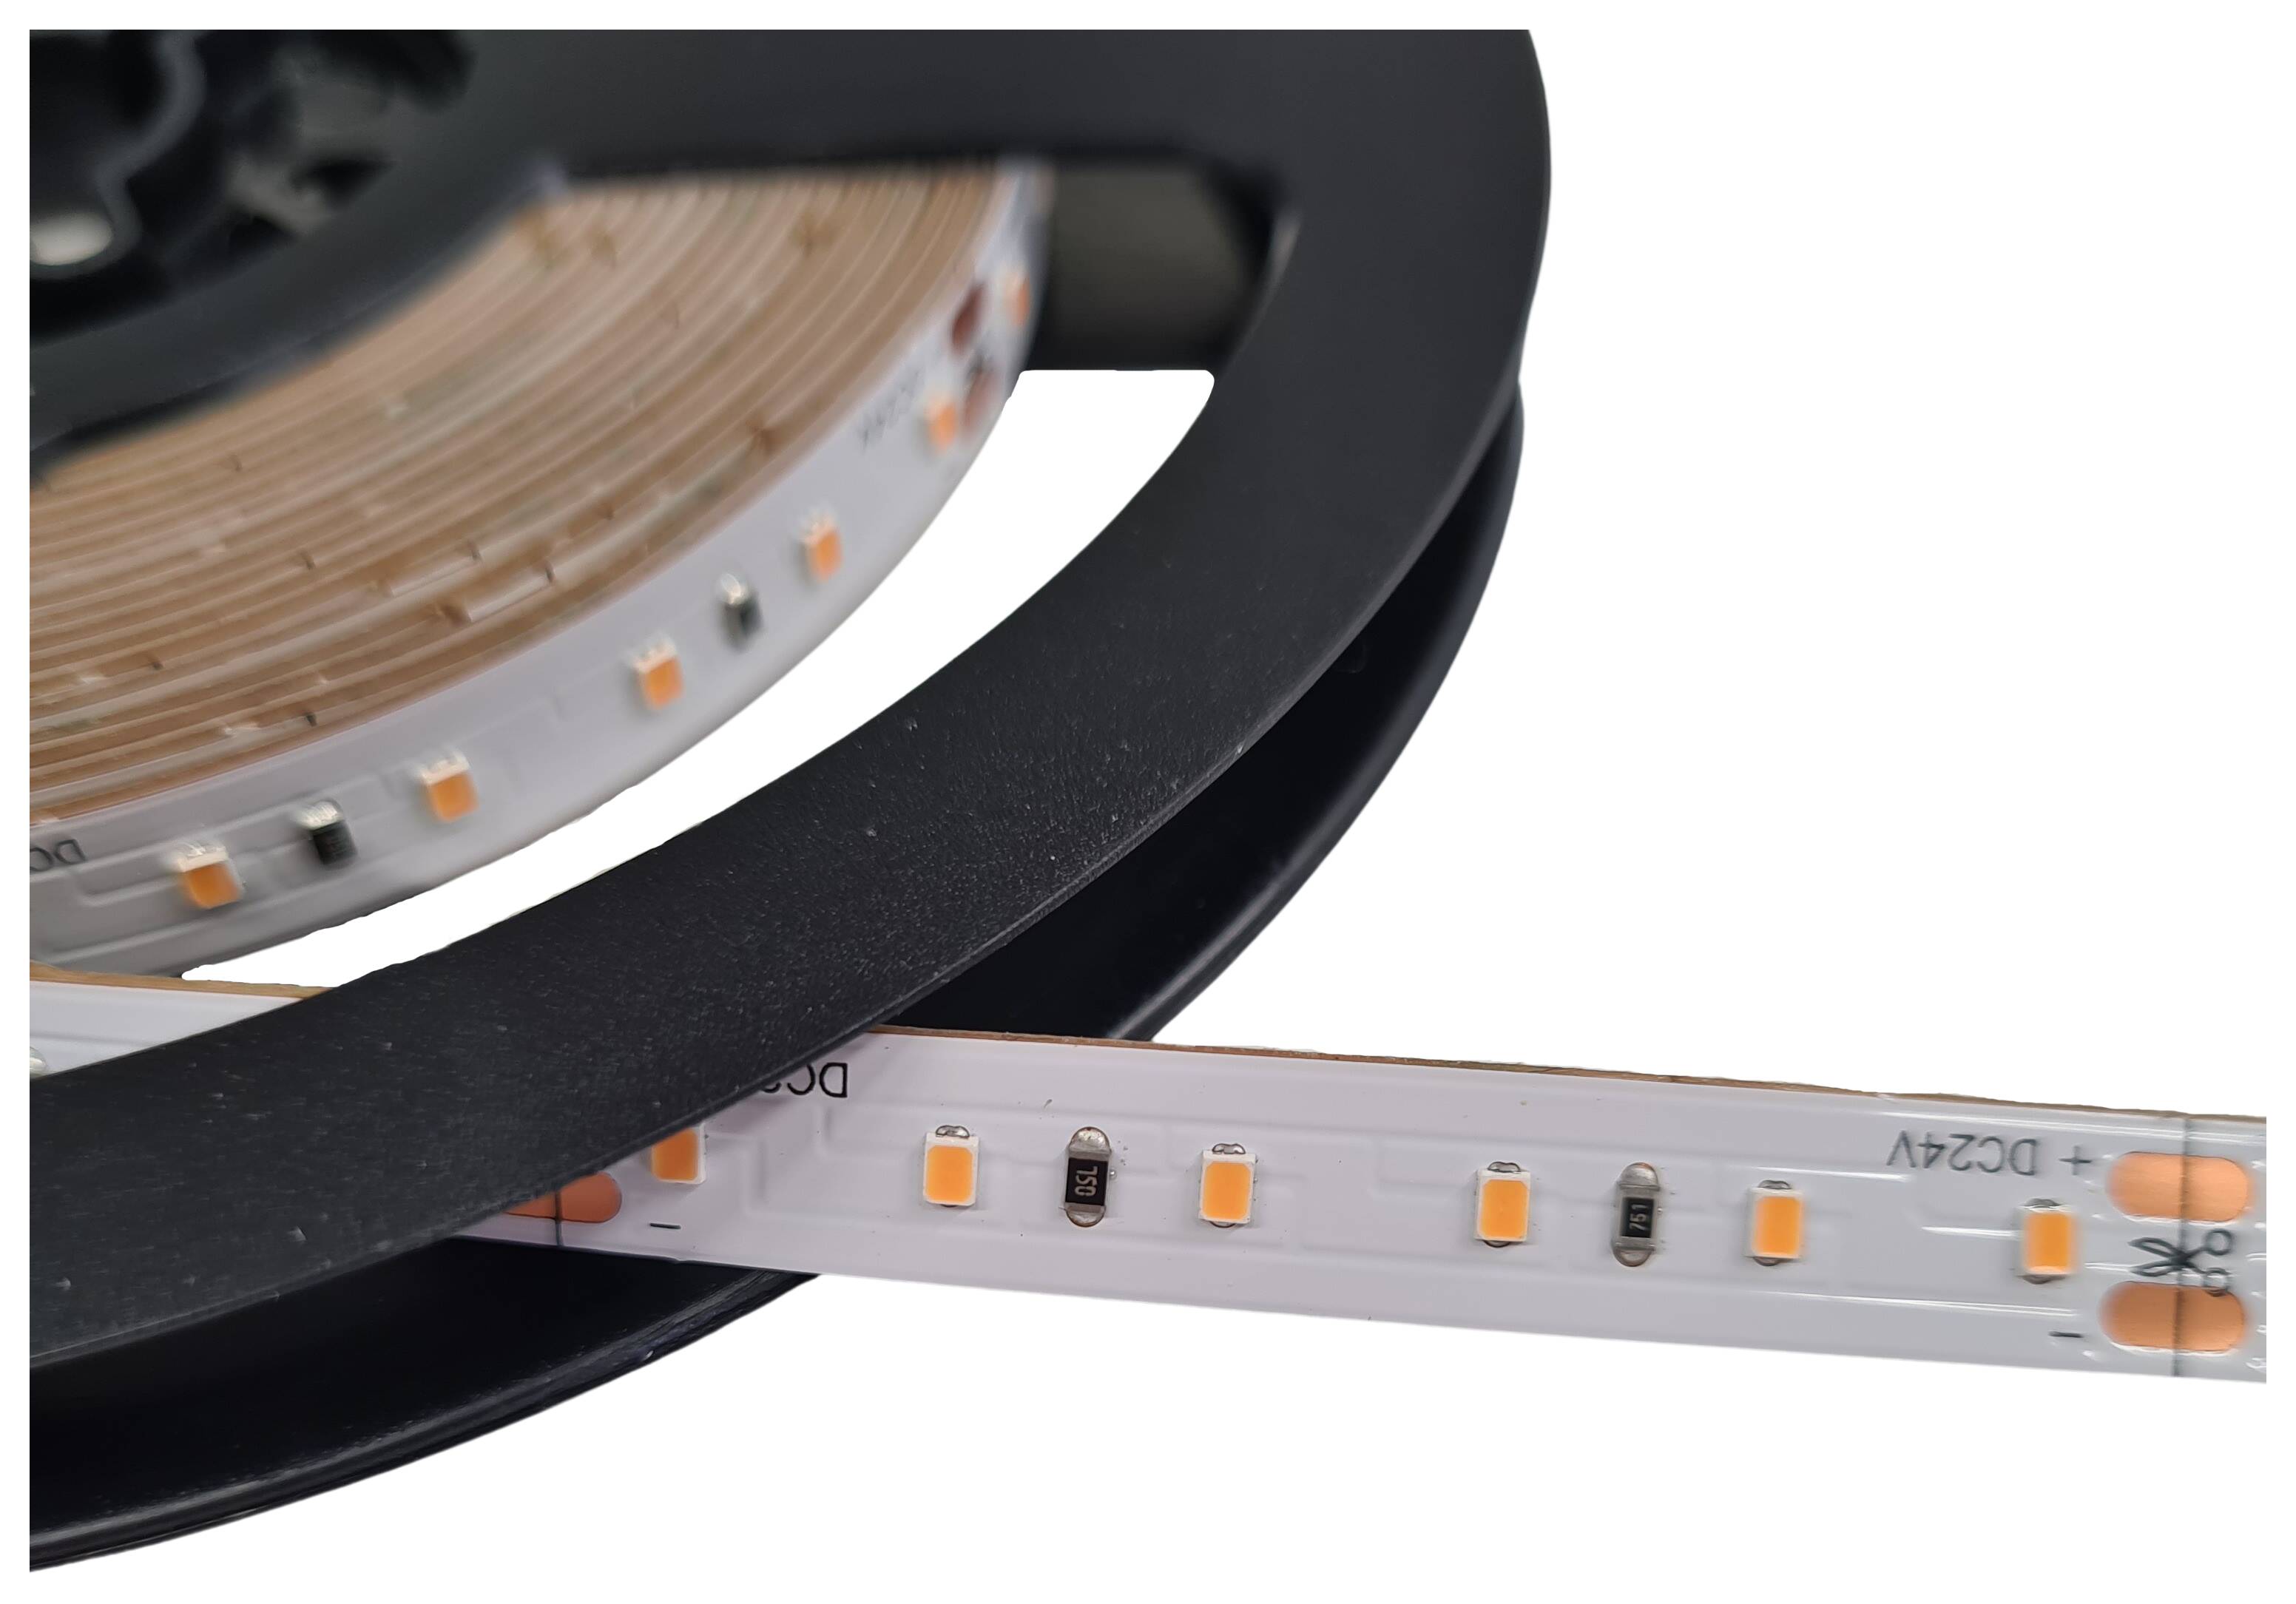 LED-Strip flexibel IP20 24V 4,8W/m 445lm/m 2700K RA>90 120 LEDs/m rückseitig 3M Tape Rolle à 5 m